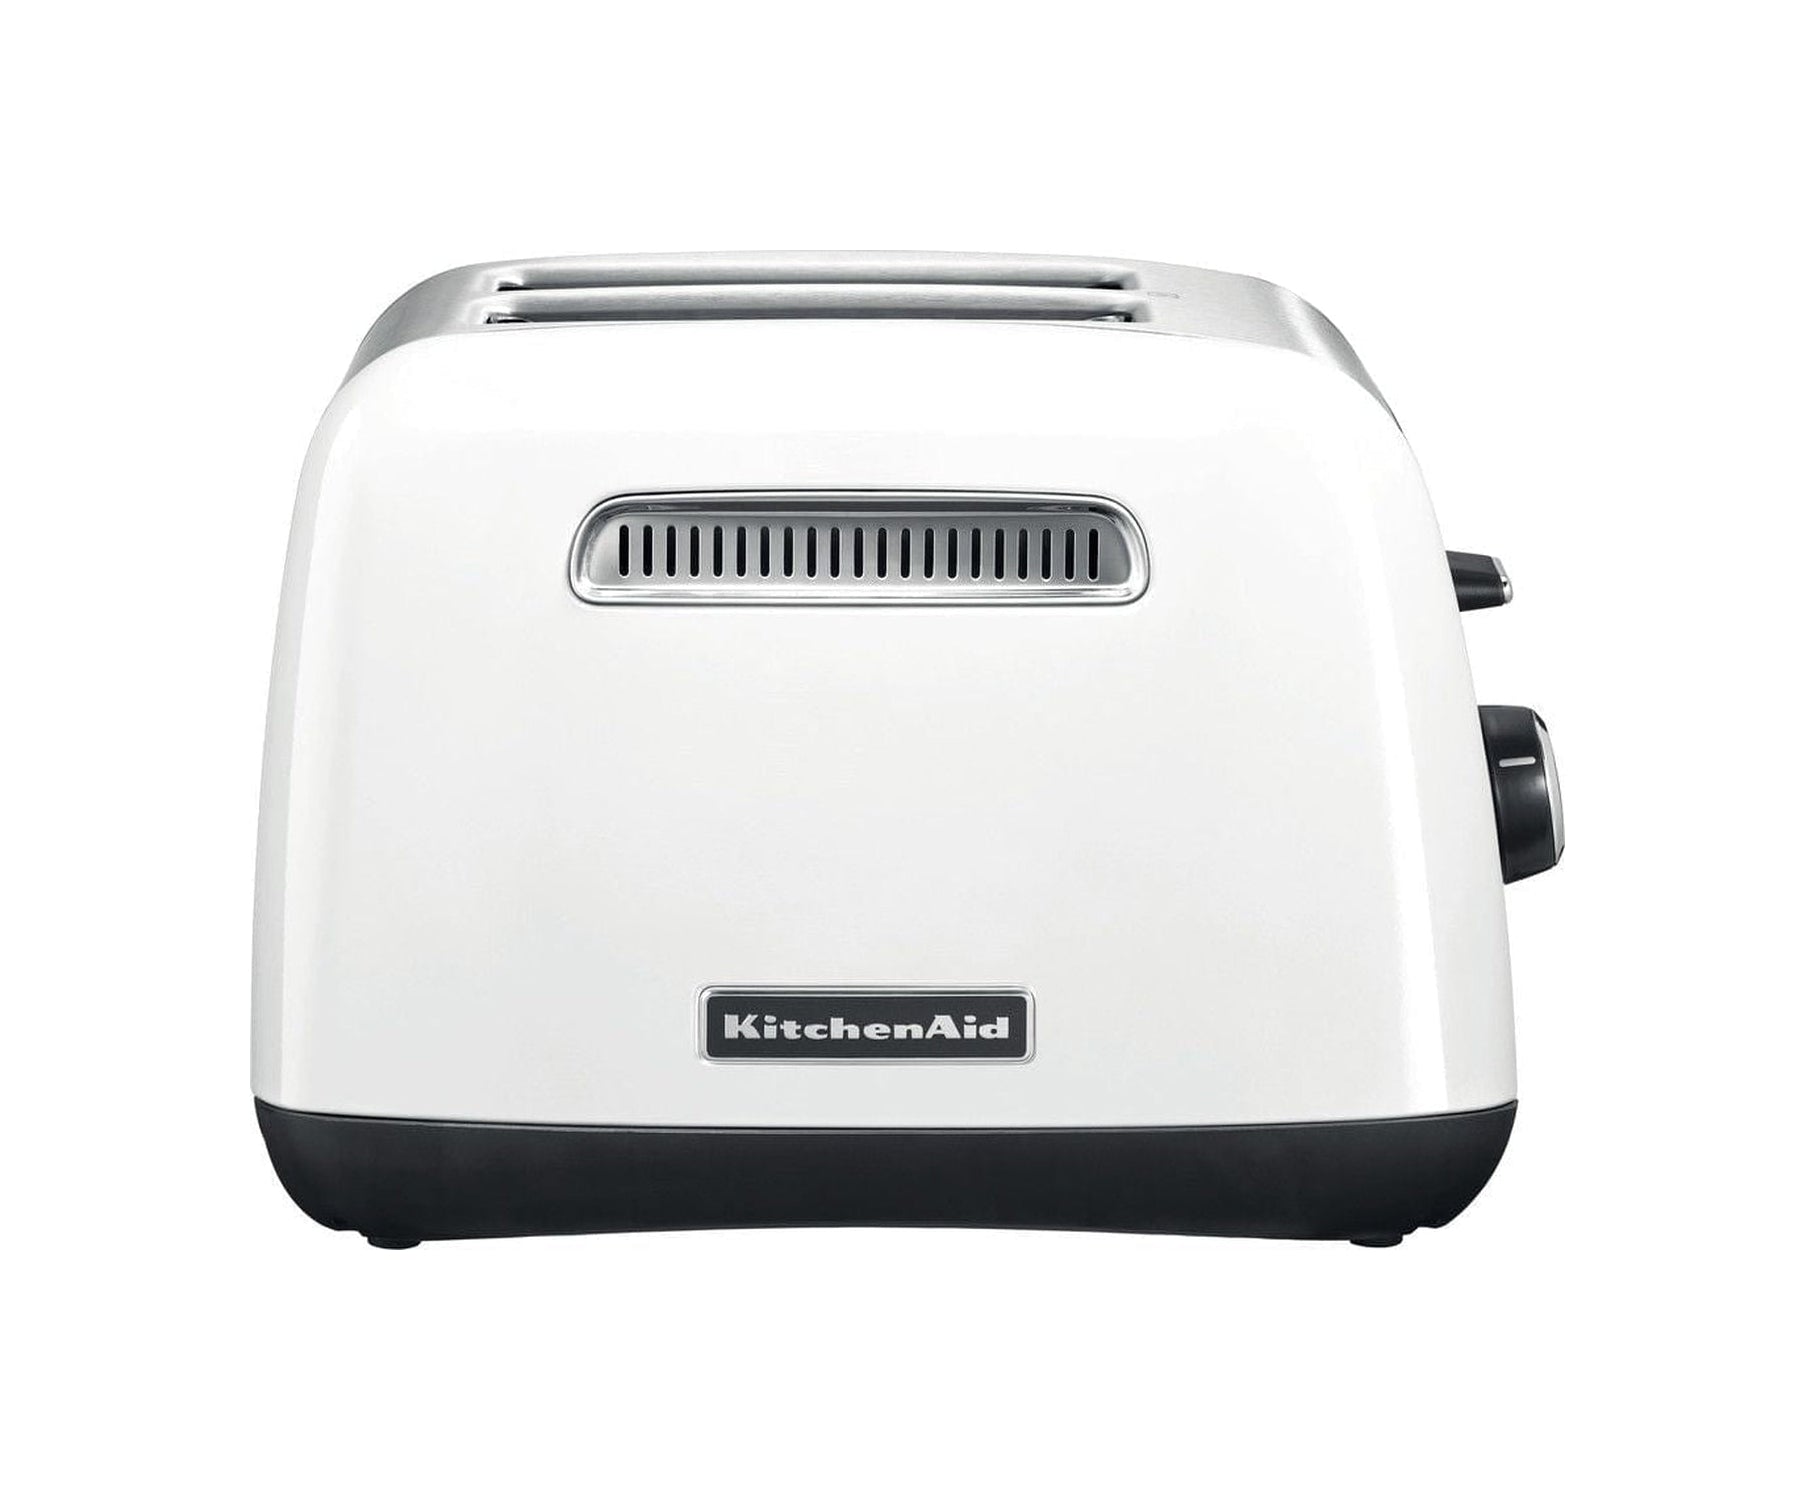 KitchenAid 5KMT2115 Classic Toaster för 2 skivor, vita